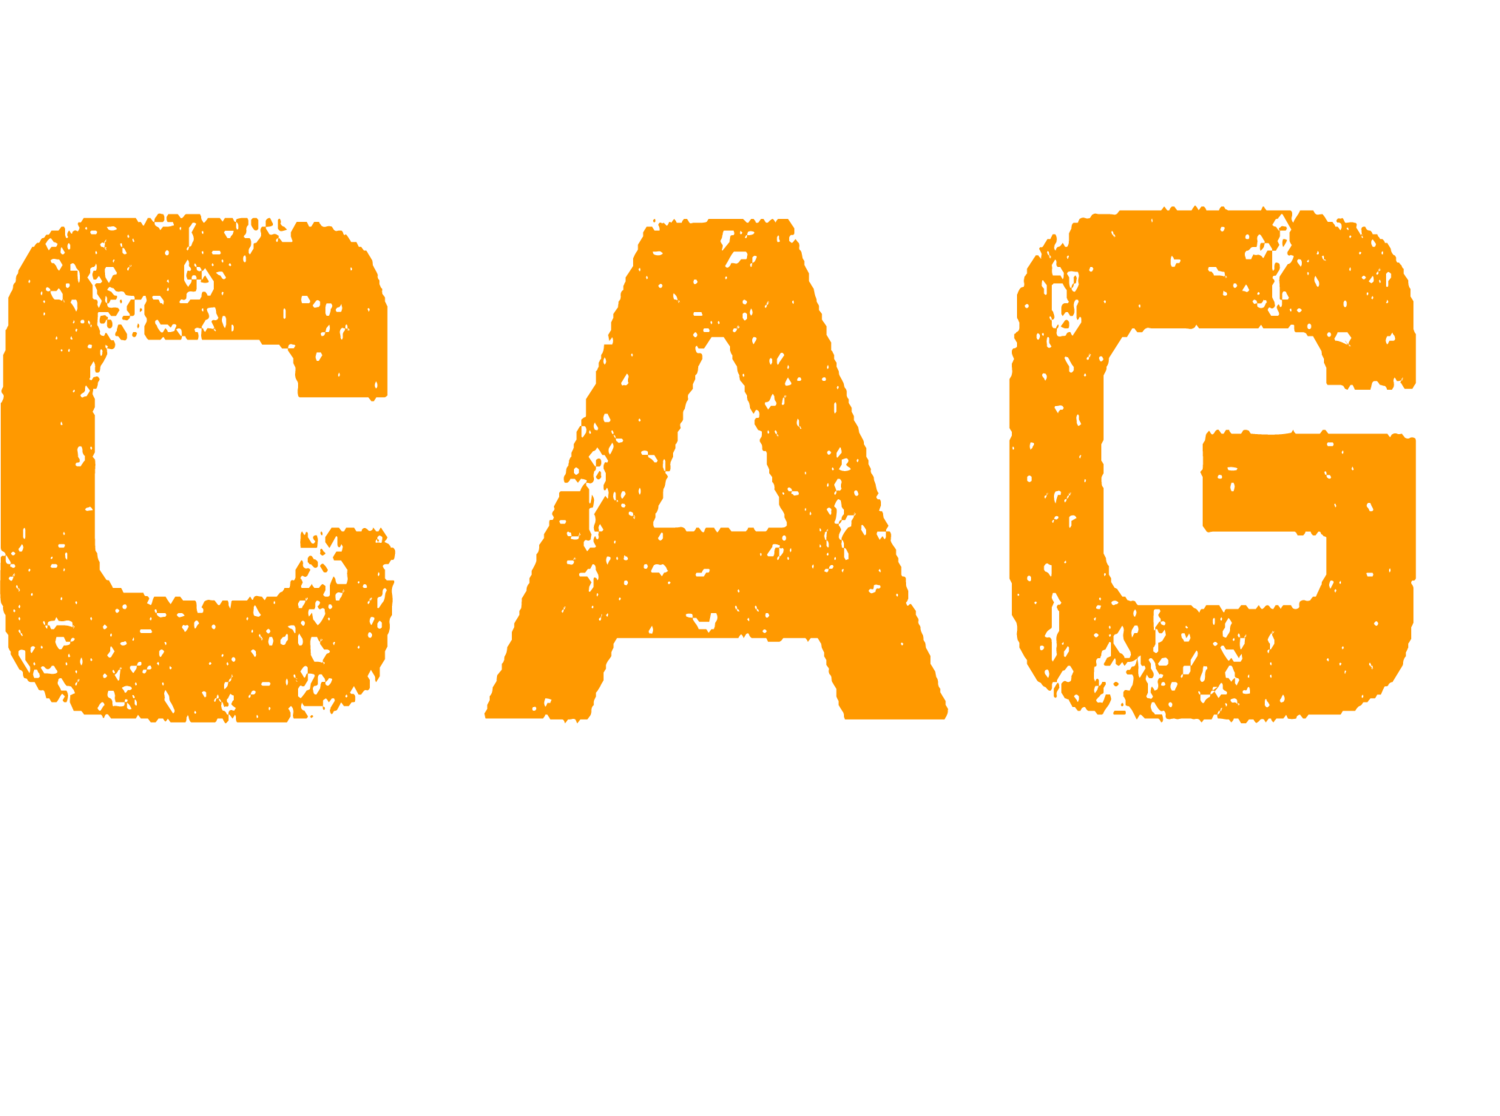 CORNERSTONE ASSEMBLY OF GOD